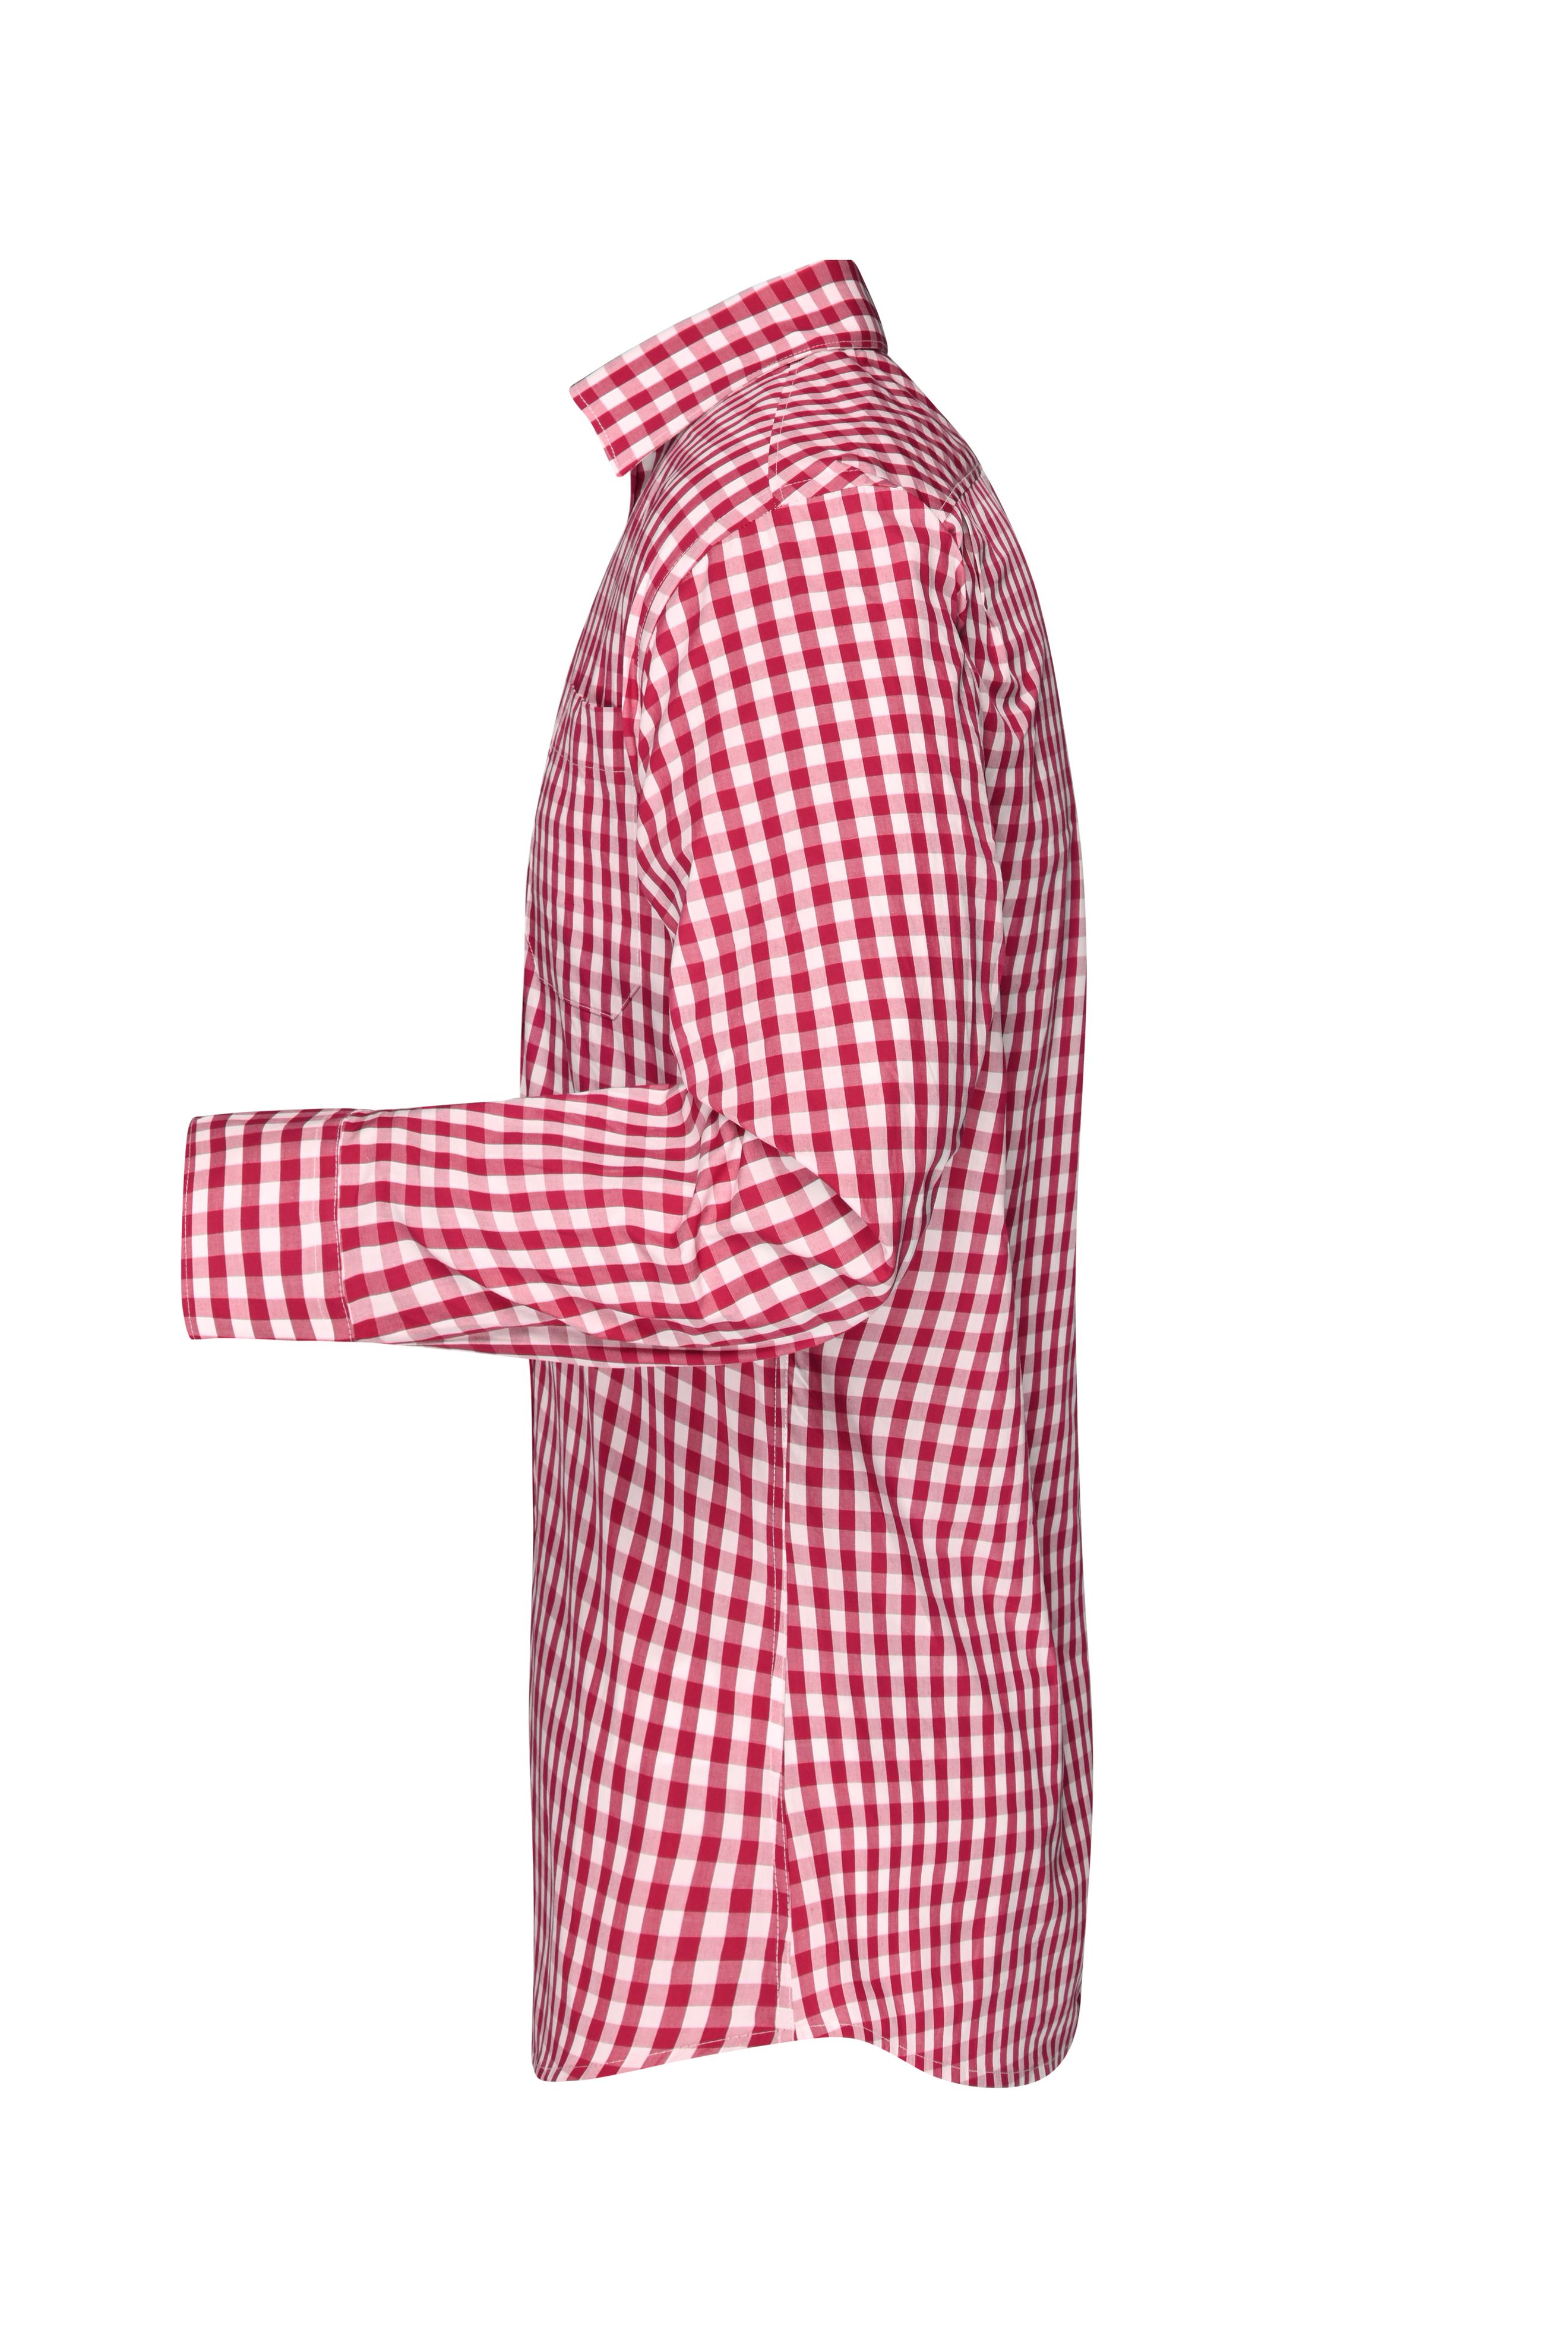 Men Men's Checked Shirt Red/white-Daiber